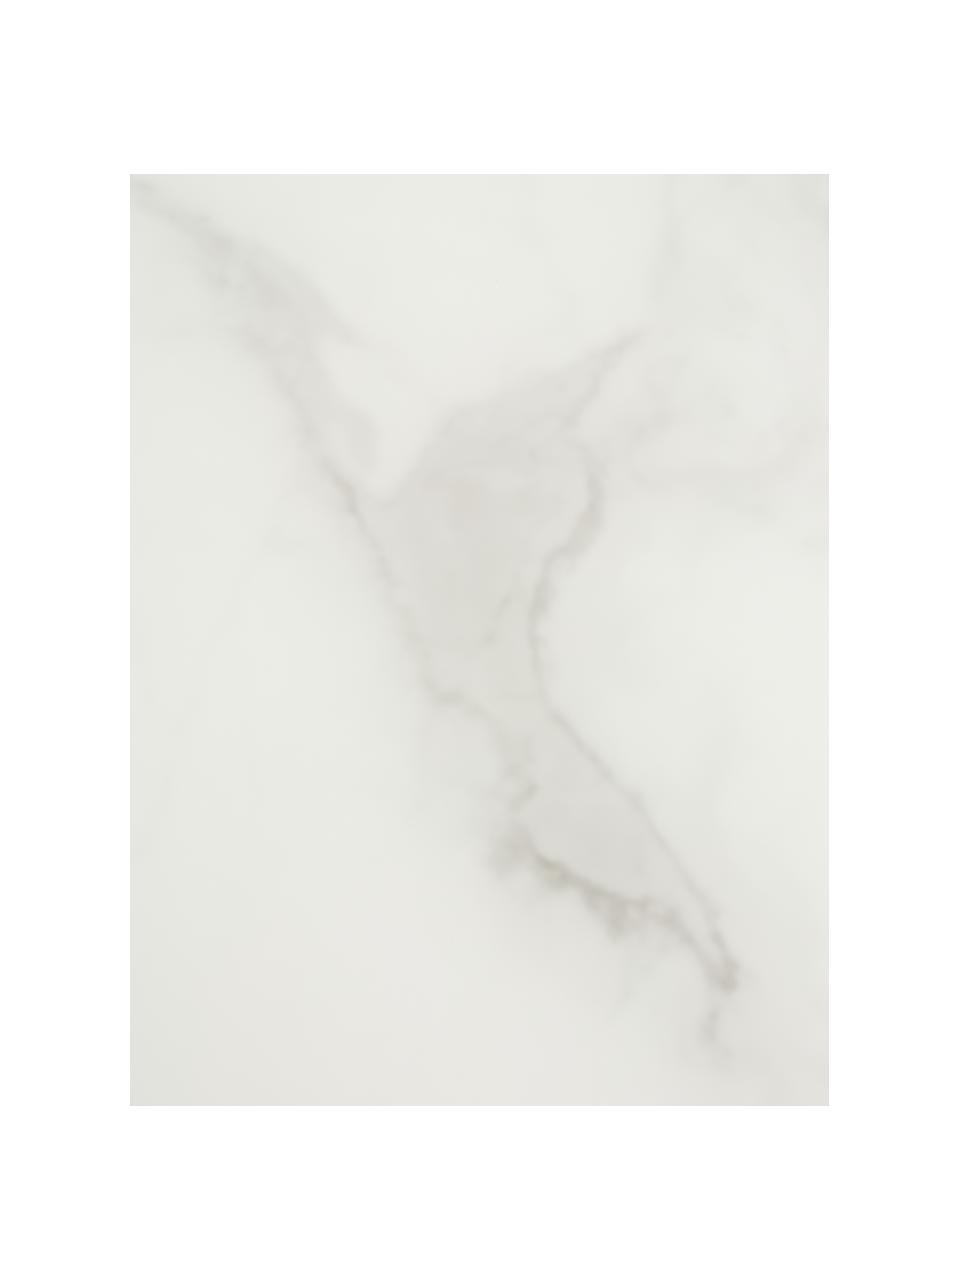 Couchtisch Antigua mit marmorierter Glasplatte, Tischplatte: Glas, matt bedruckt, Gestell: Stahl, verchromt, Weiß-grau marmoriert, Silberfarben, Ø 78 x H 45 cm